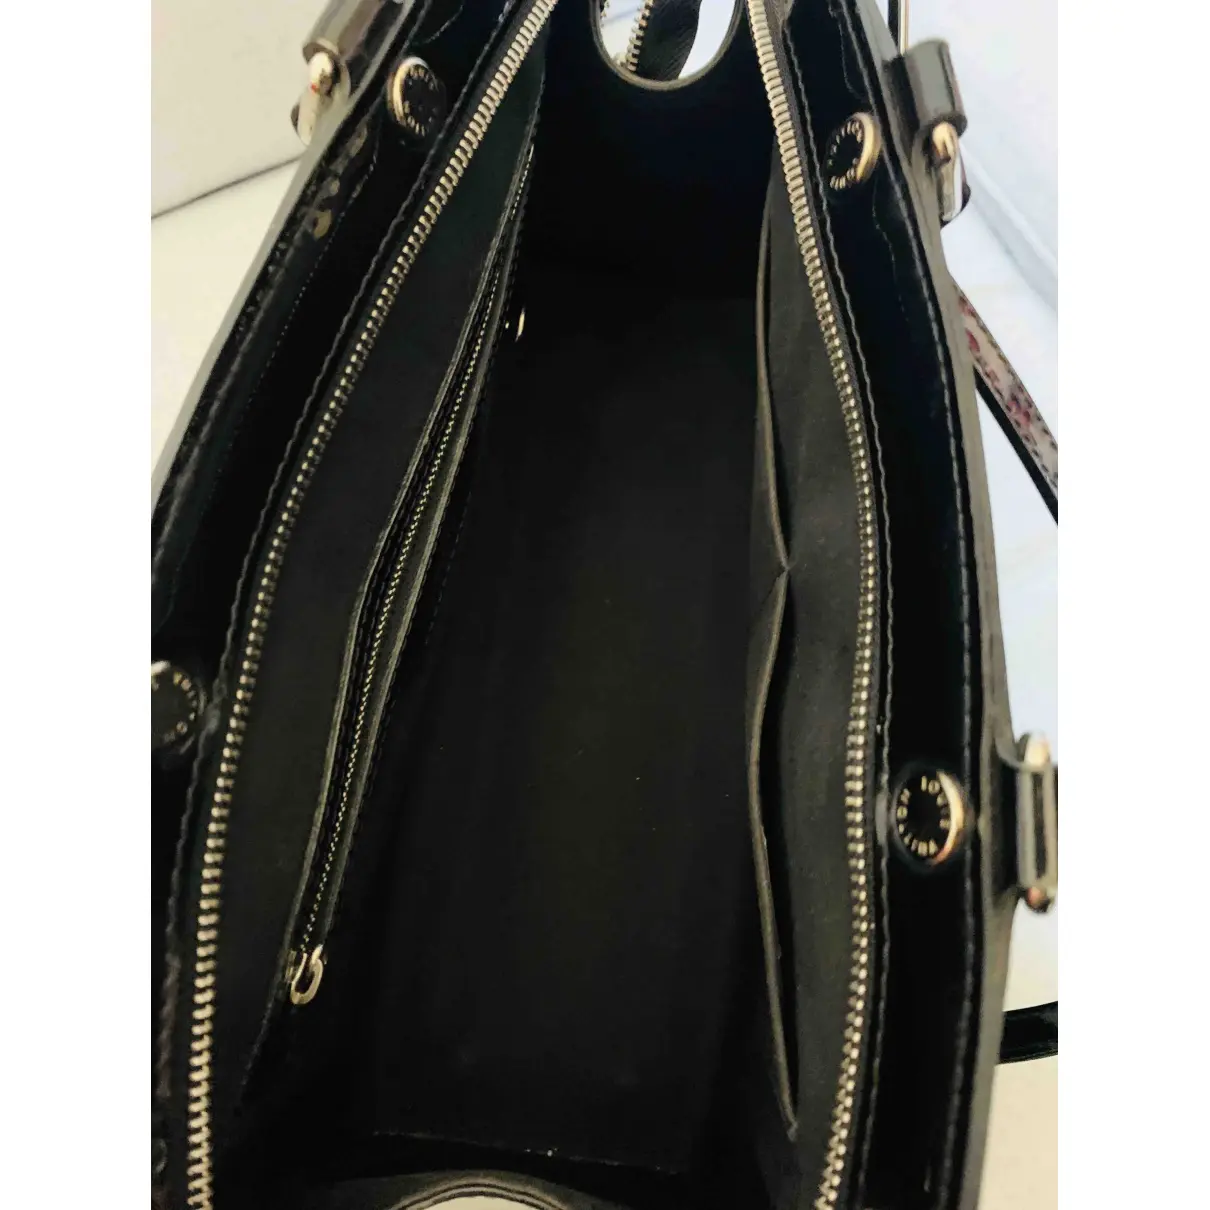 Bréa patent leather handbag Louis Vuitton